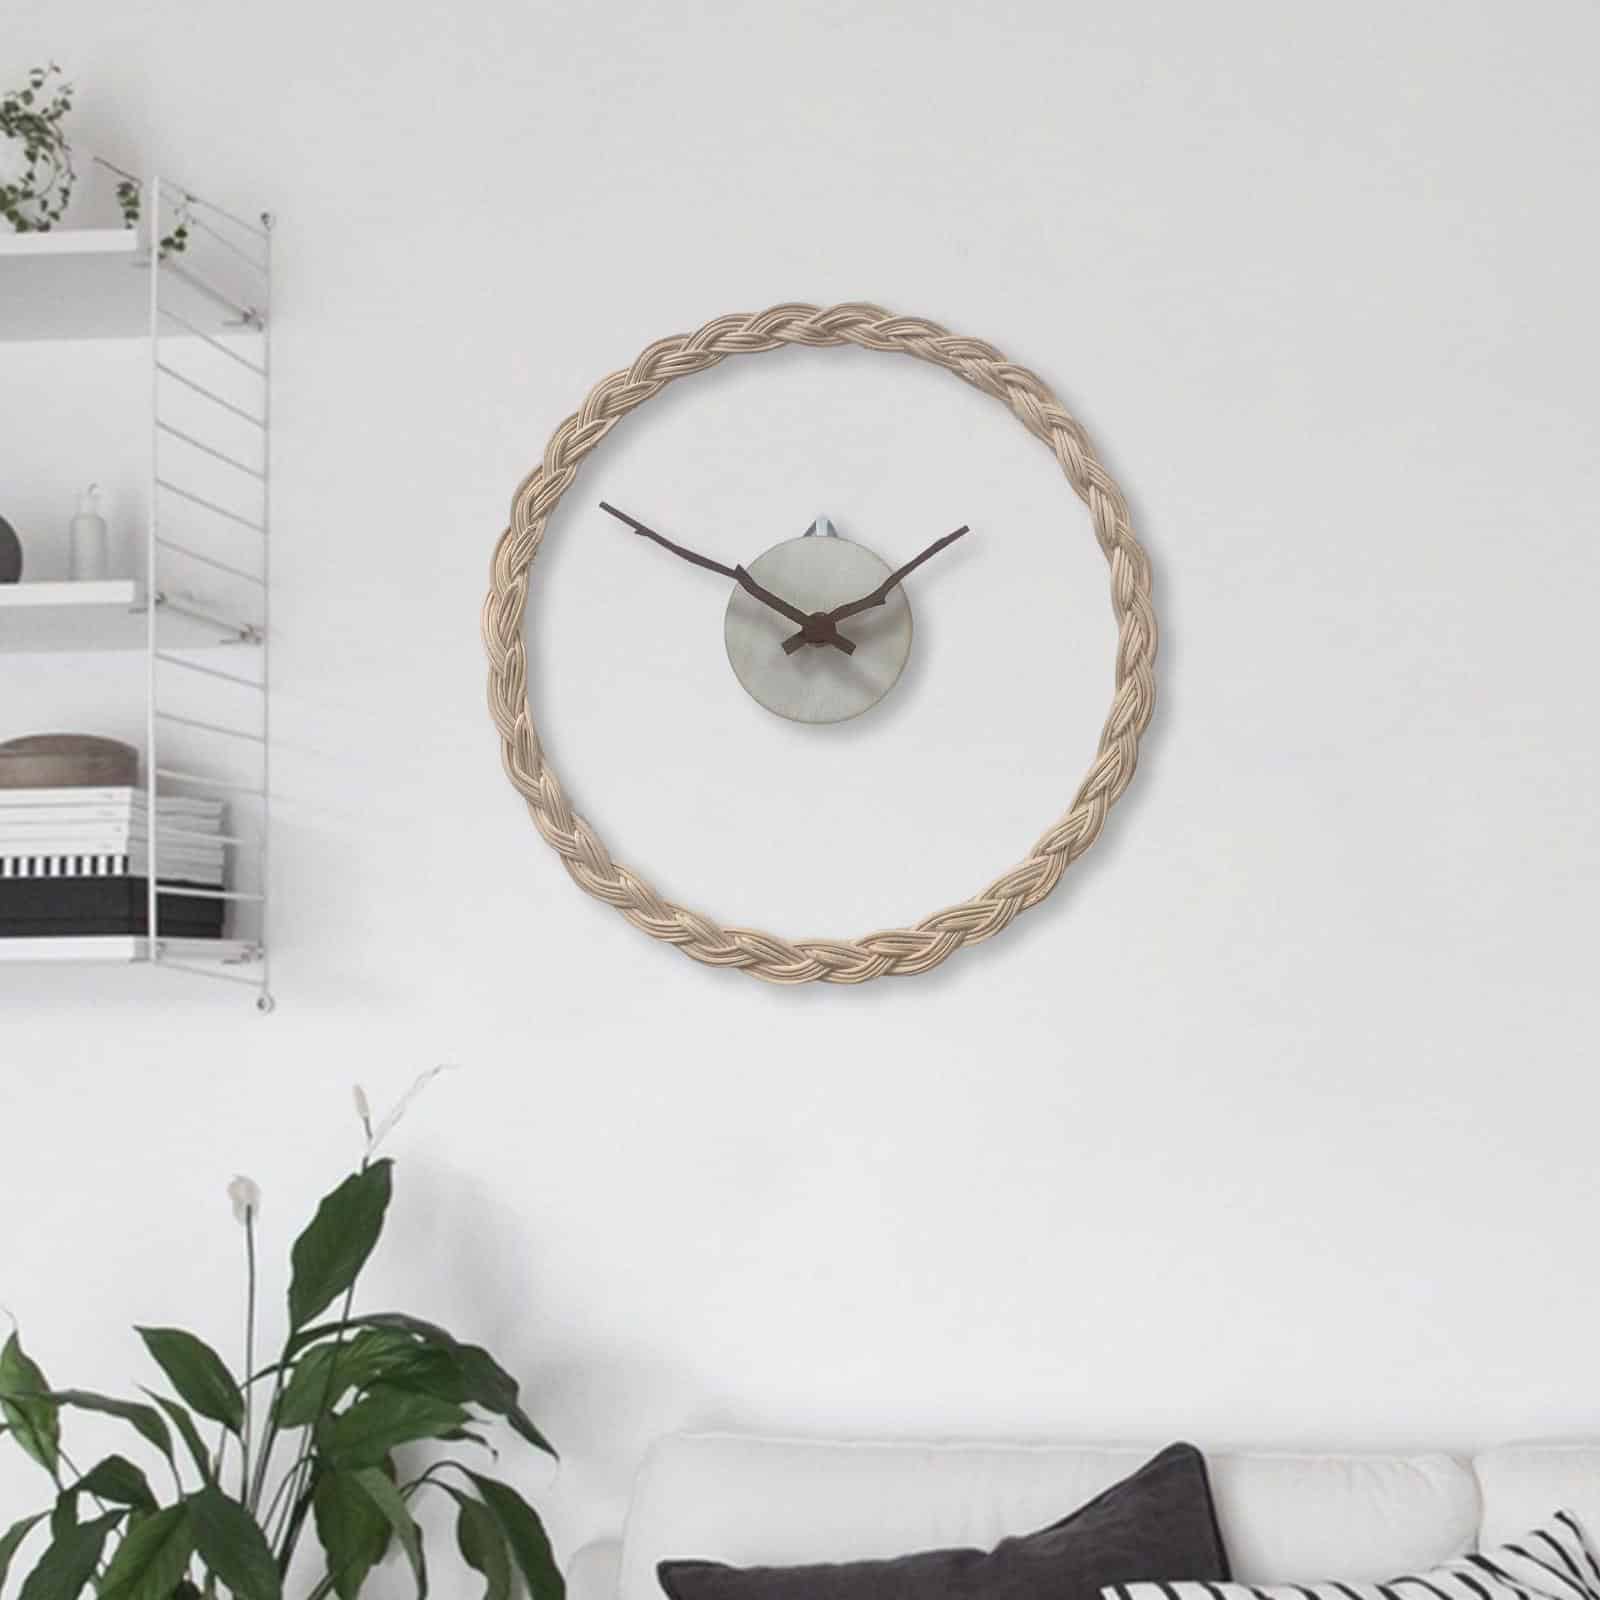 Horloge transparente avec le tour en rotin et le centre metal avec les aiguilles style bois, installée sur un mur blanc dans un salon avec des étagères à gauche et en bas des plantes